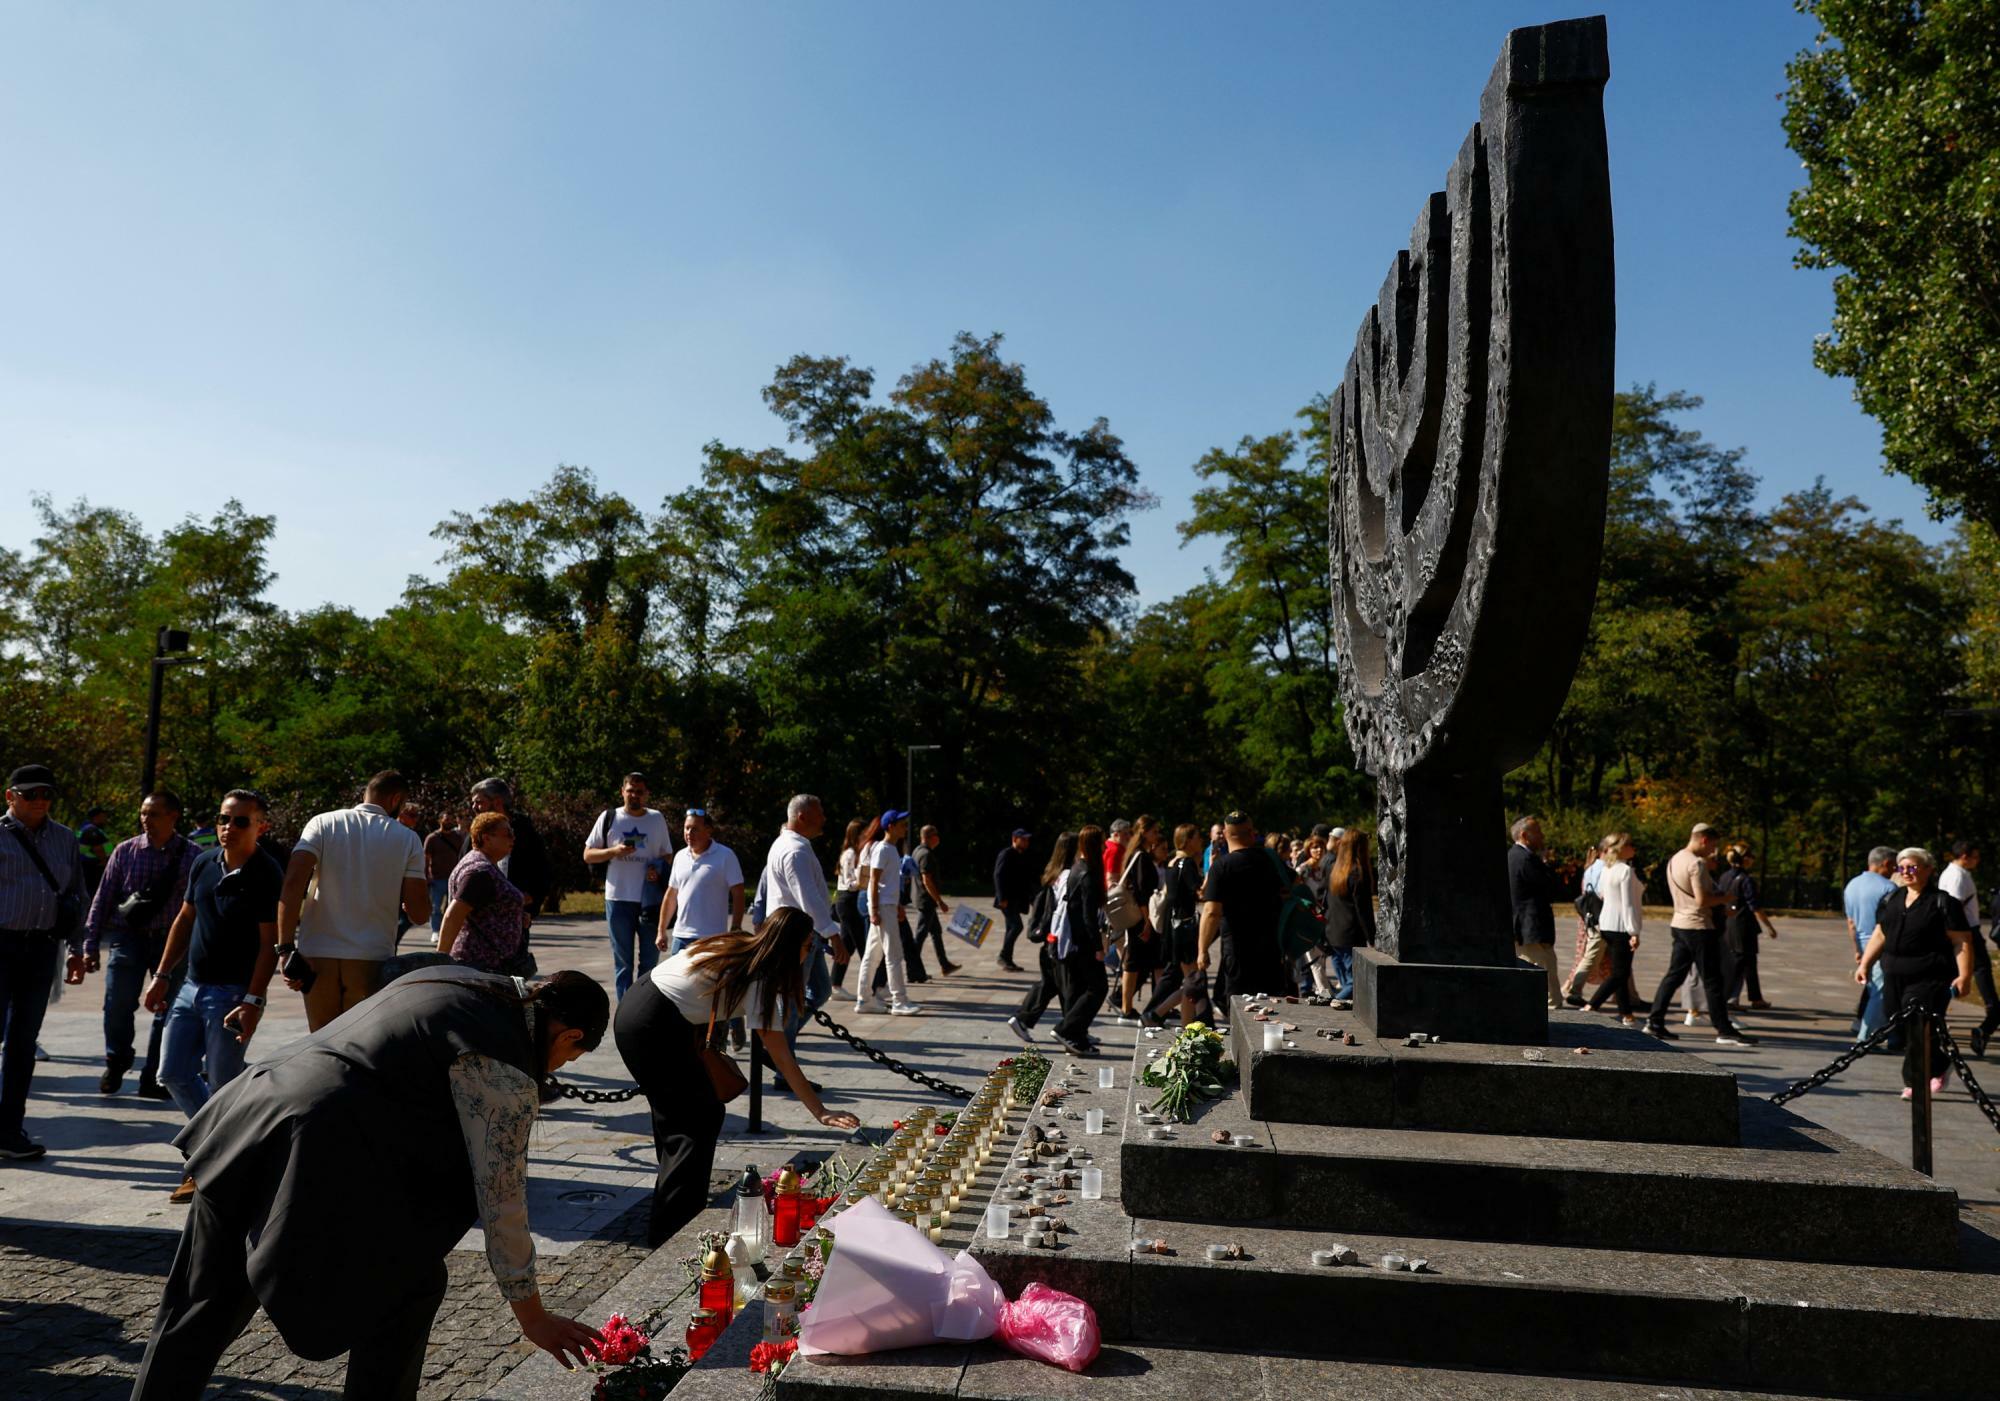 キーウで行われたホロコースト犠牲者追悼式典（2023.9.29）。ウクライナにもユダヤ人は多く、ゼレンスキー大統領はイスラエル以外で唯一のユダヤ系国家元首でもある。